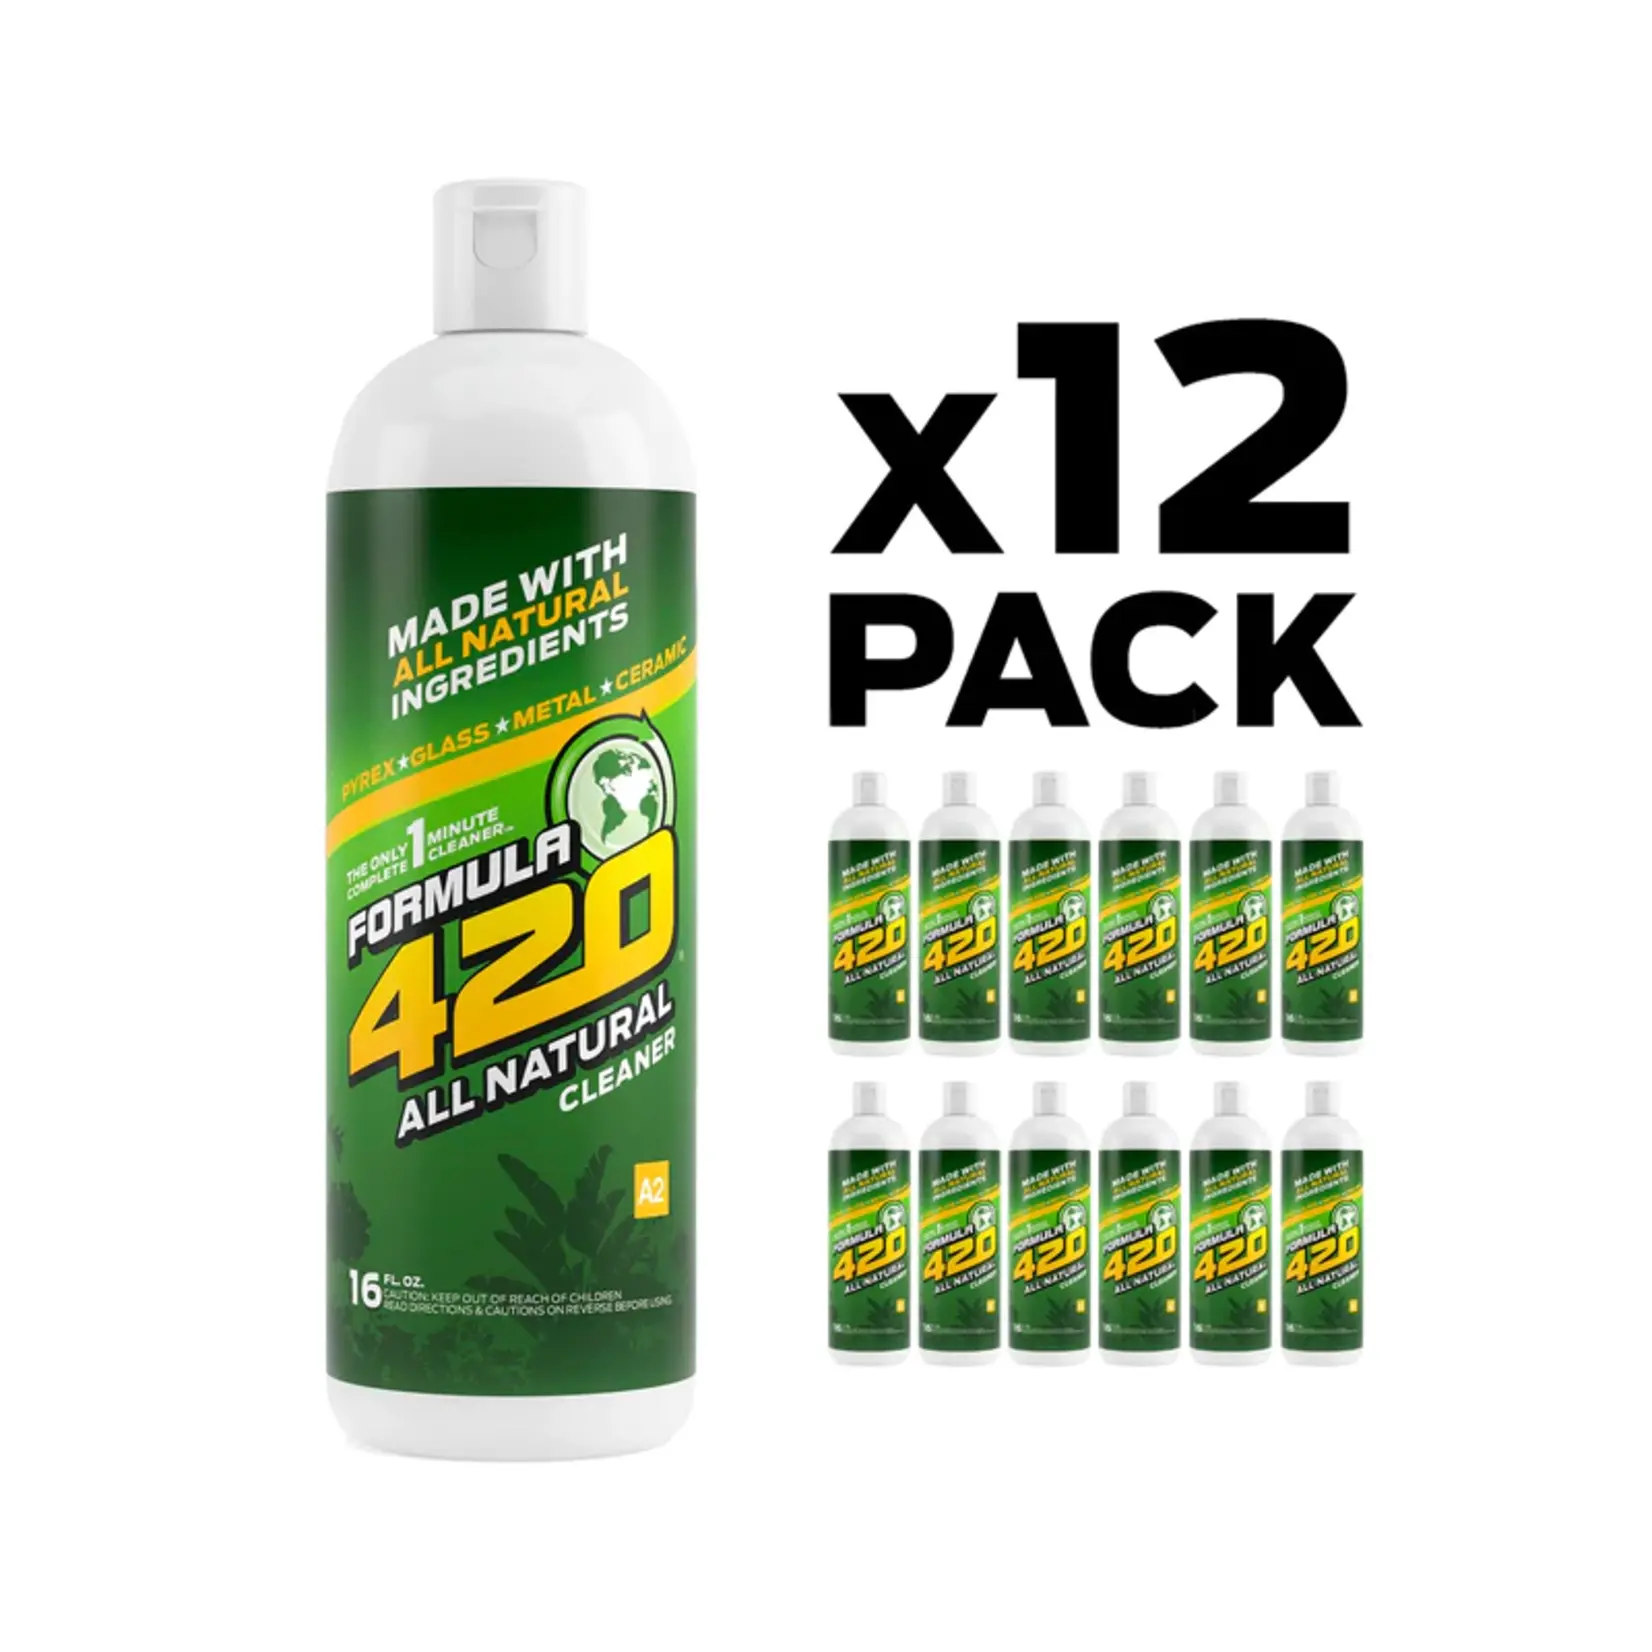 Formula 420 All Natural Cleaner (16oz)